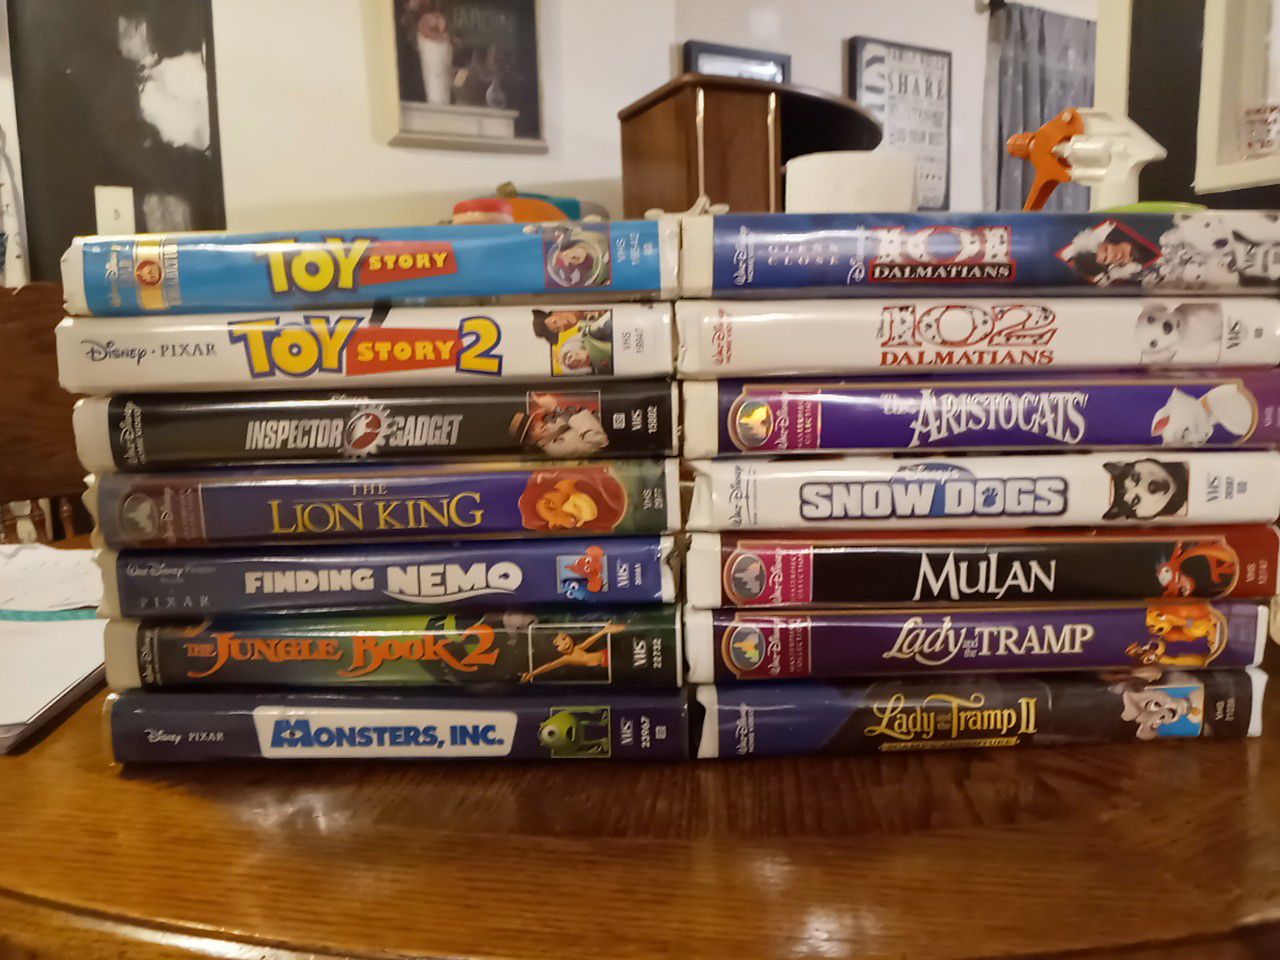 Disney VHS Classics